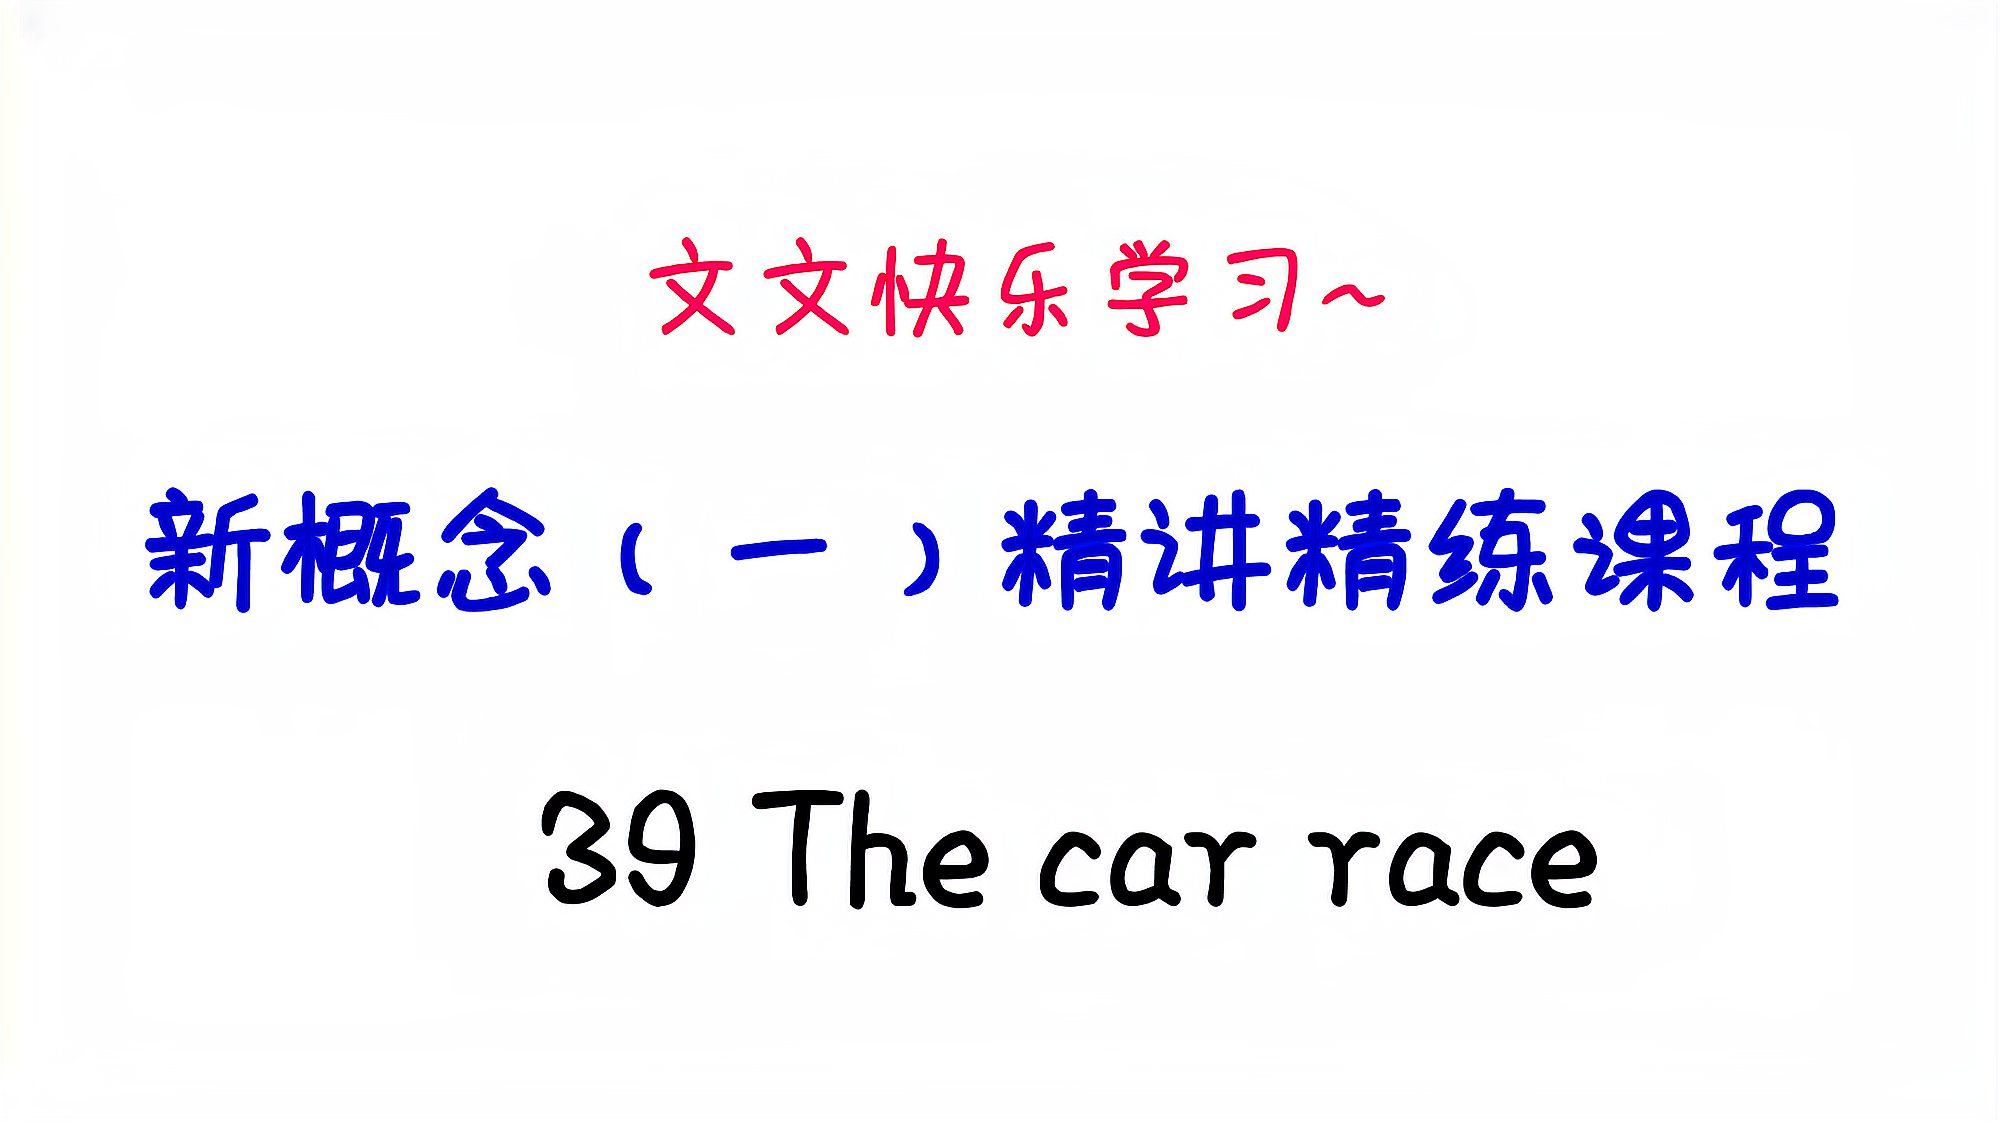 [图]新概念英语(1)精讲课程39 The car race